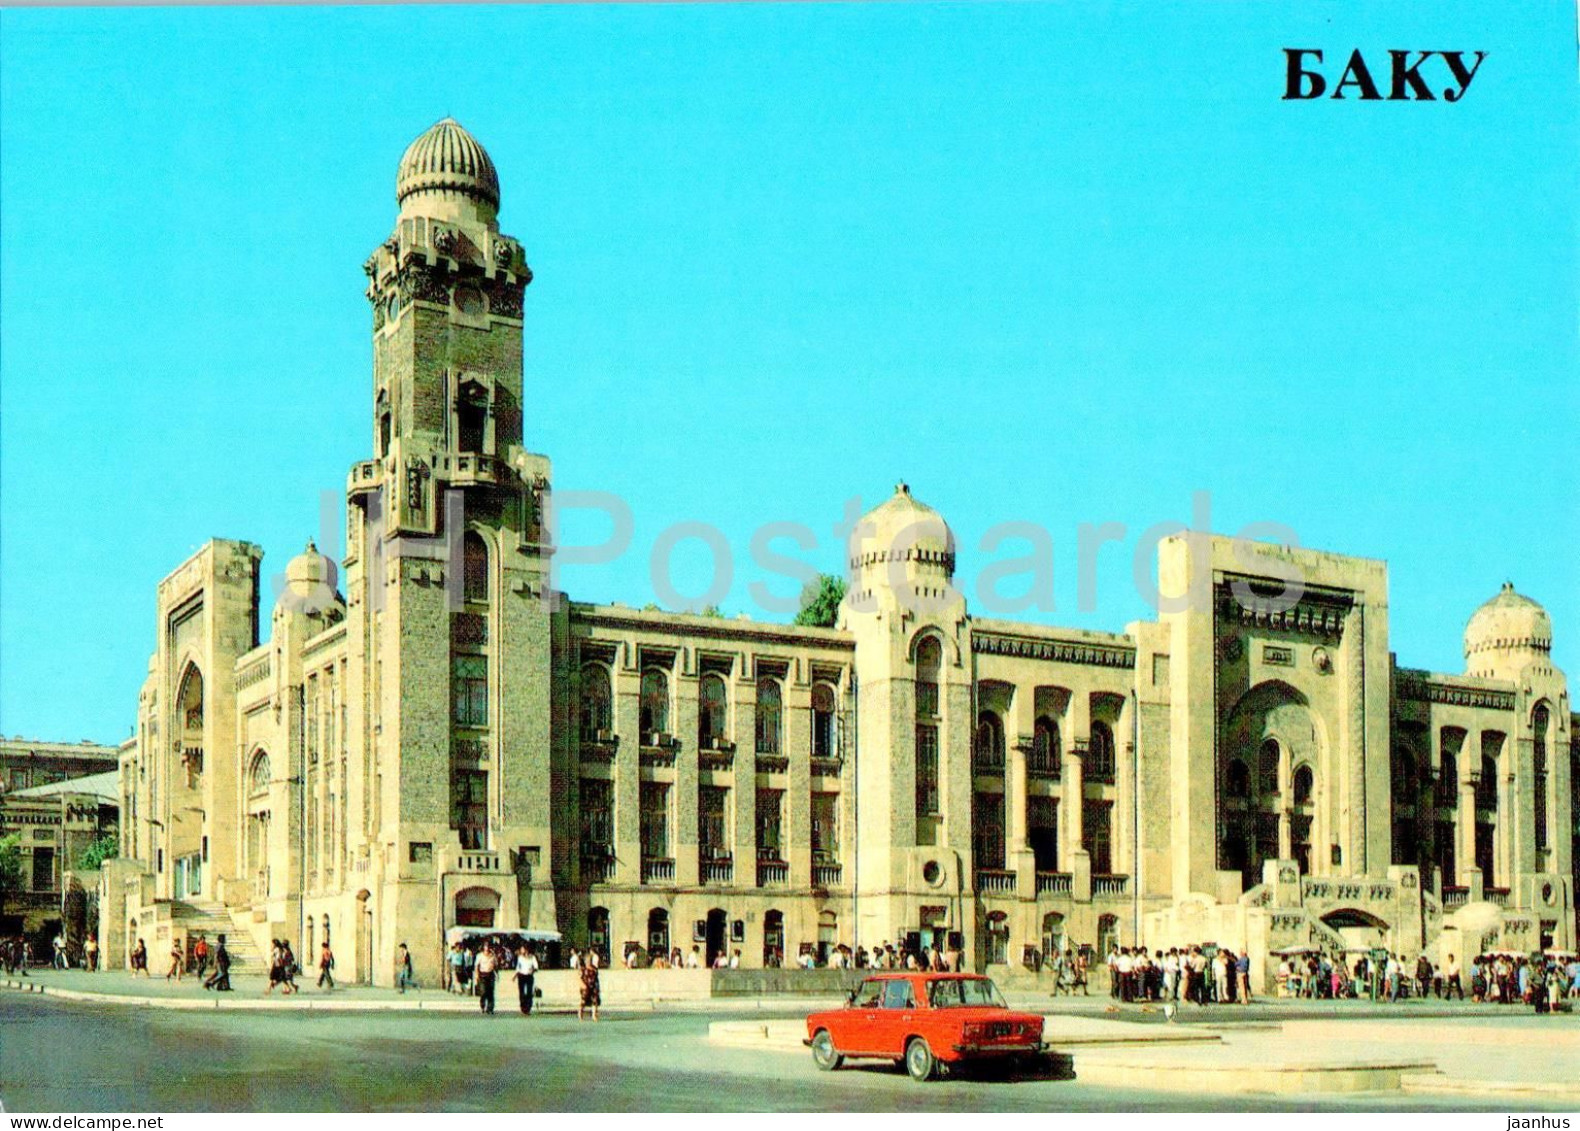 Baku - Old Railway Station - Car Zhiguli - 1985 - Azerbaijan USSR - Unused - Azerbeidzjan